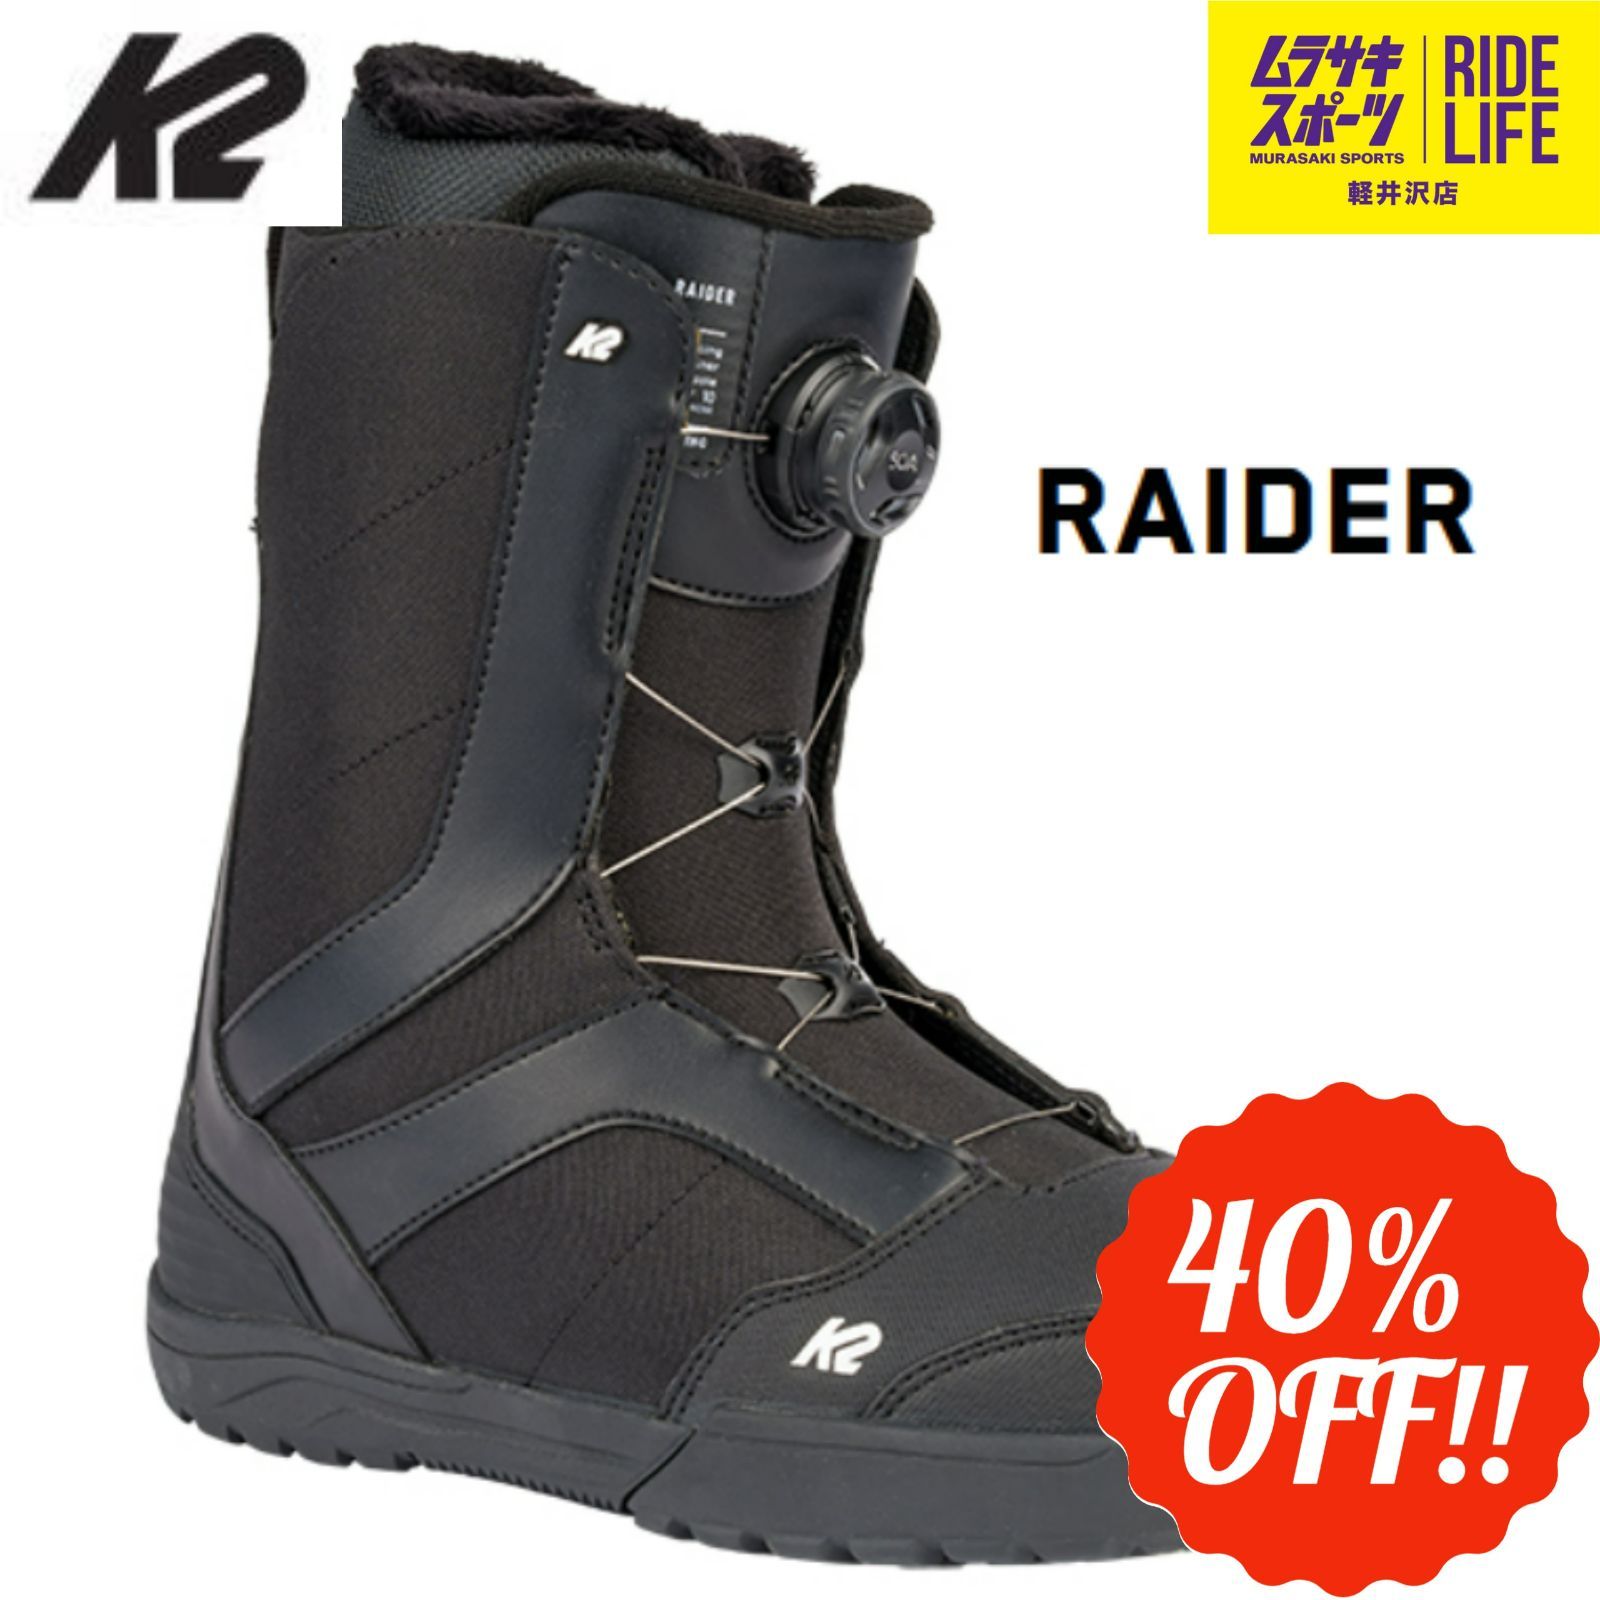 【未使用】K2 RAIDER メンズ スノーボード ブーツ 26.5cmサイズ265cm